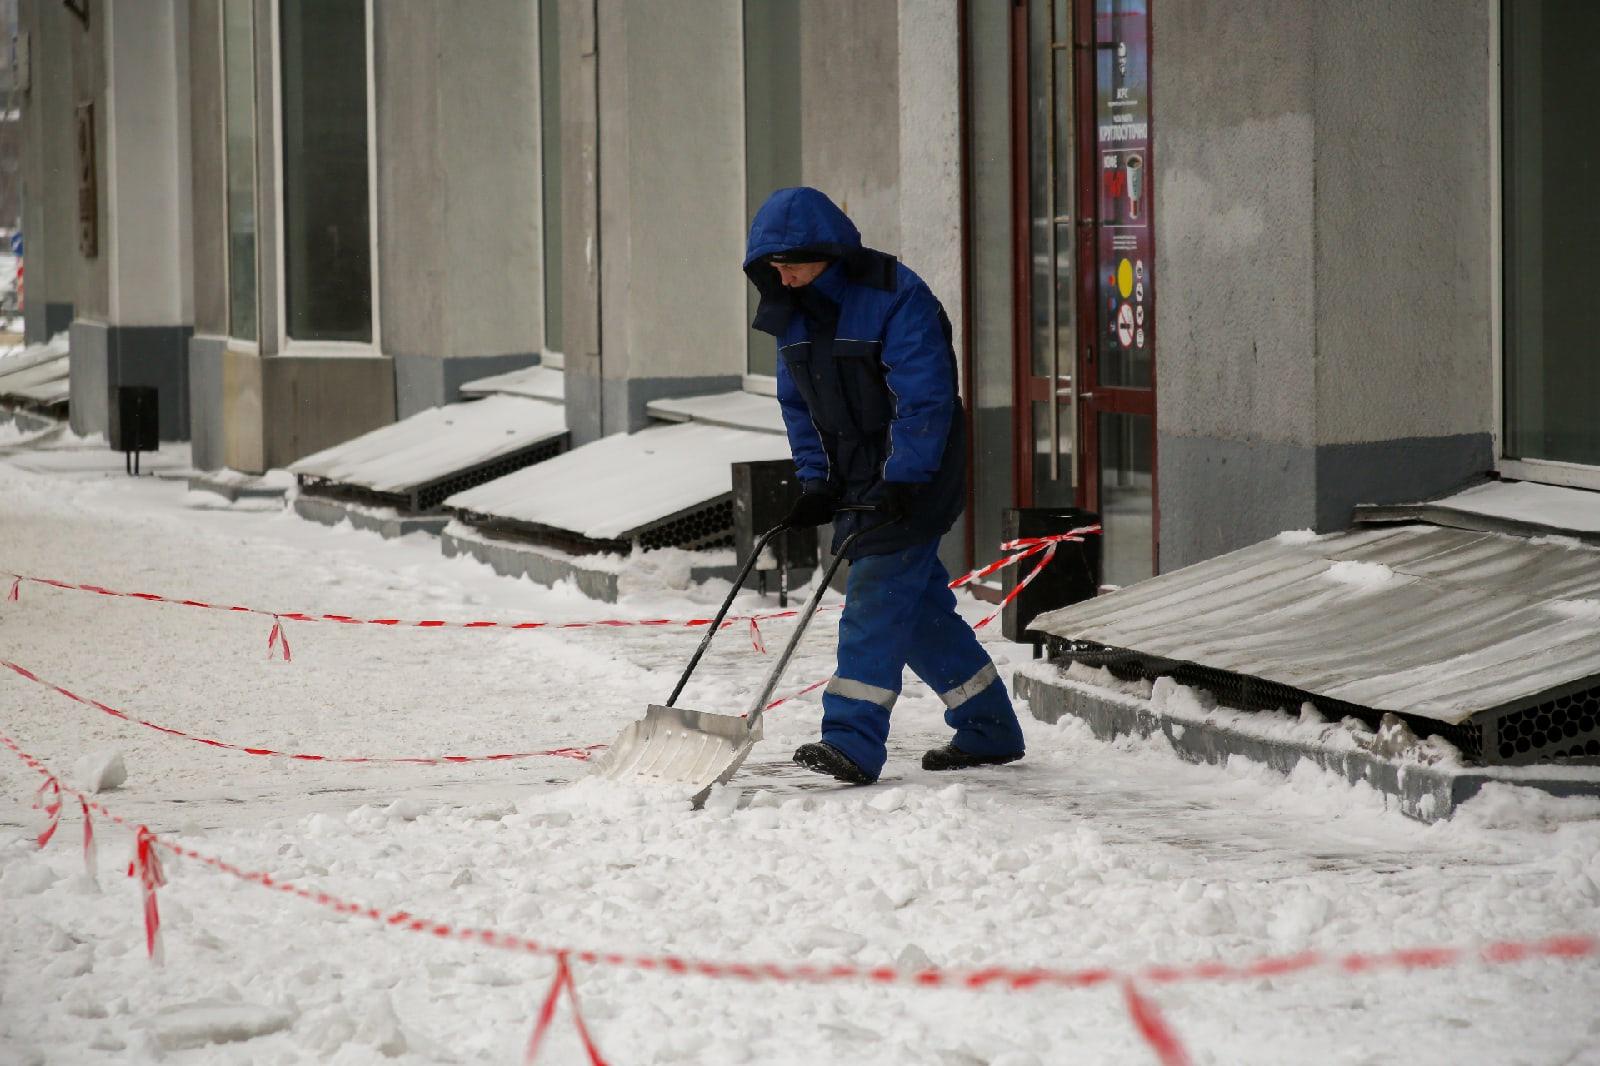 Снег в Новосибирске 2021 в июне. К уборке снега в Екатеринбурге привлекут осужденных. Уборка снега в Новосибирске у школы 216. Фото мобильная бригада уборщиков.